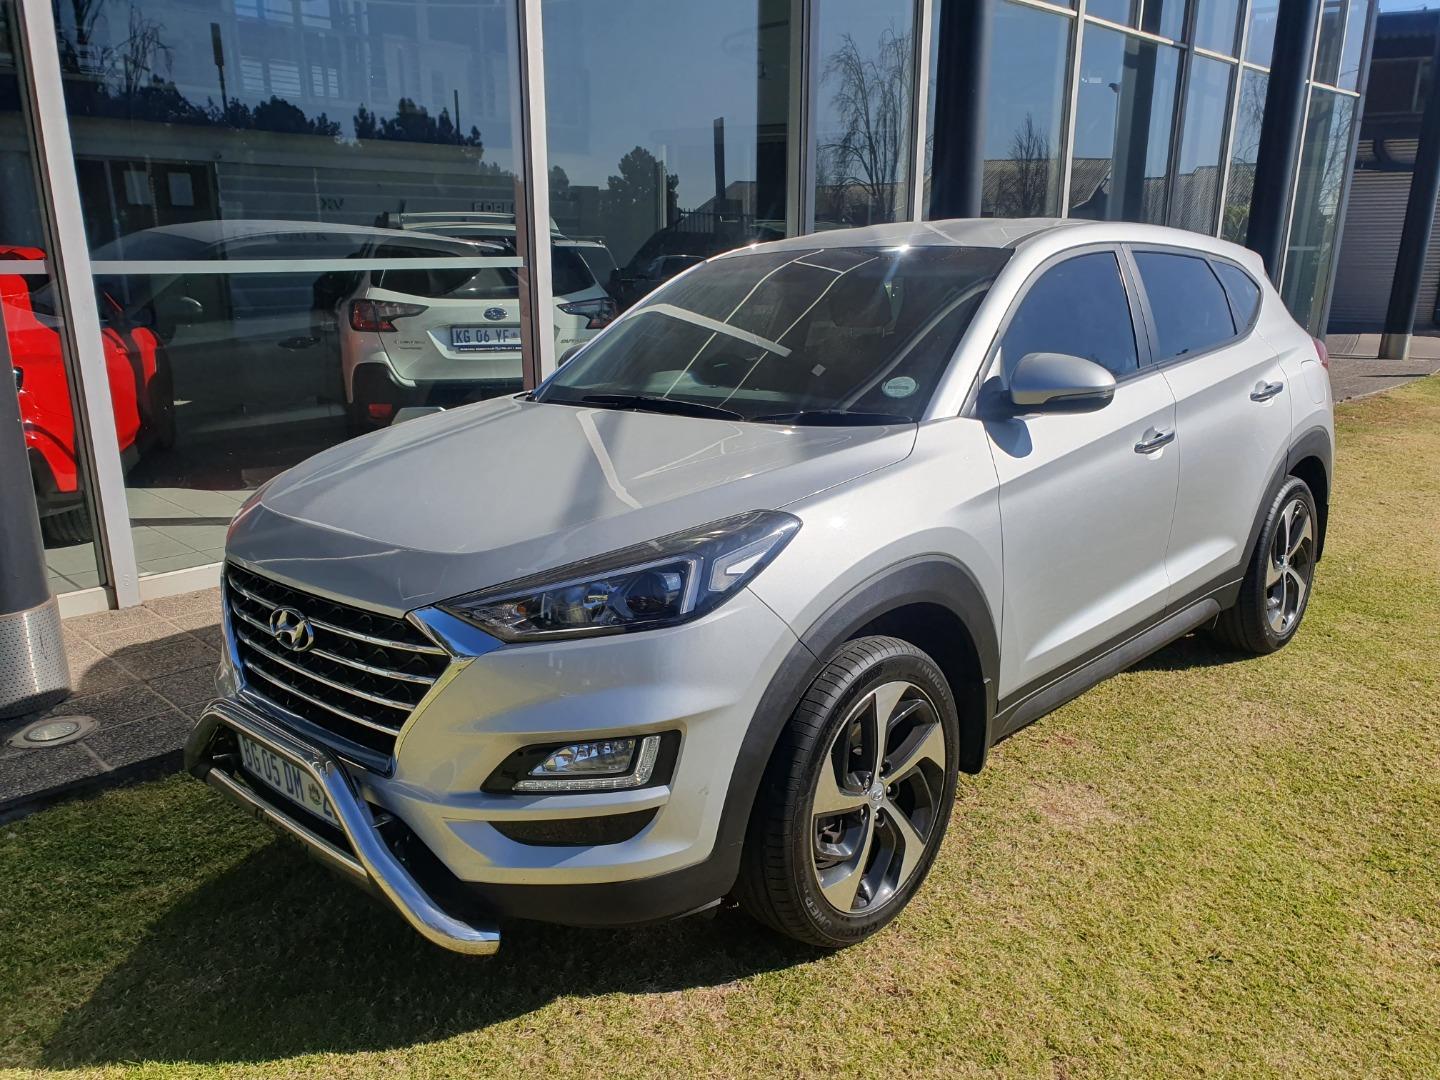 2020 Hyundai Tucson 2.0 Premium